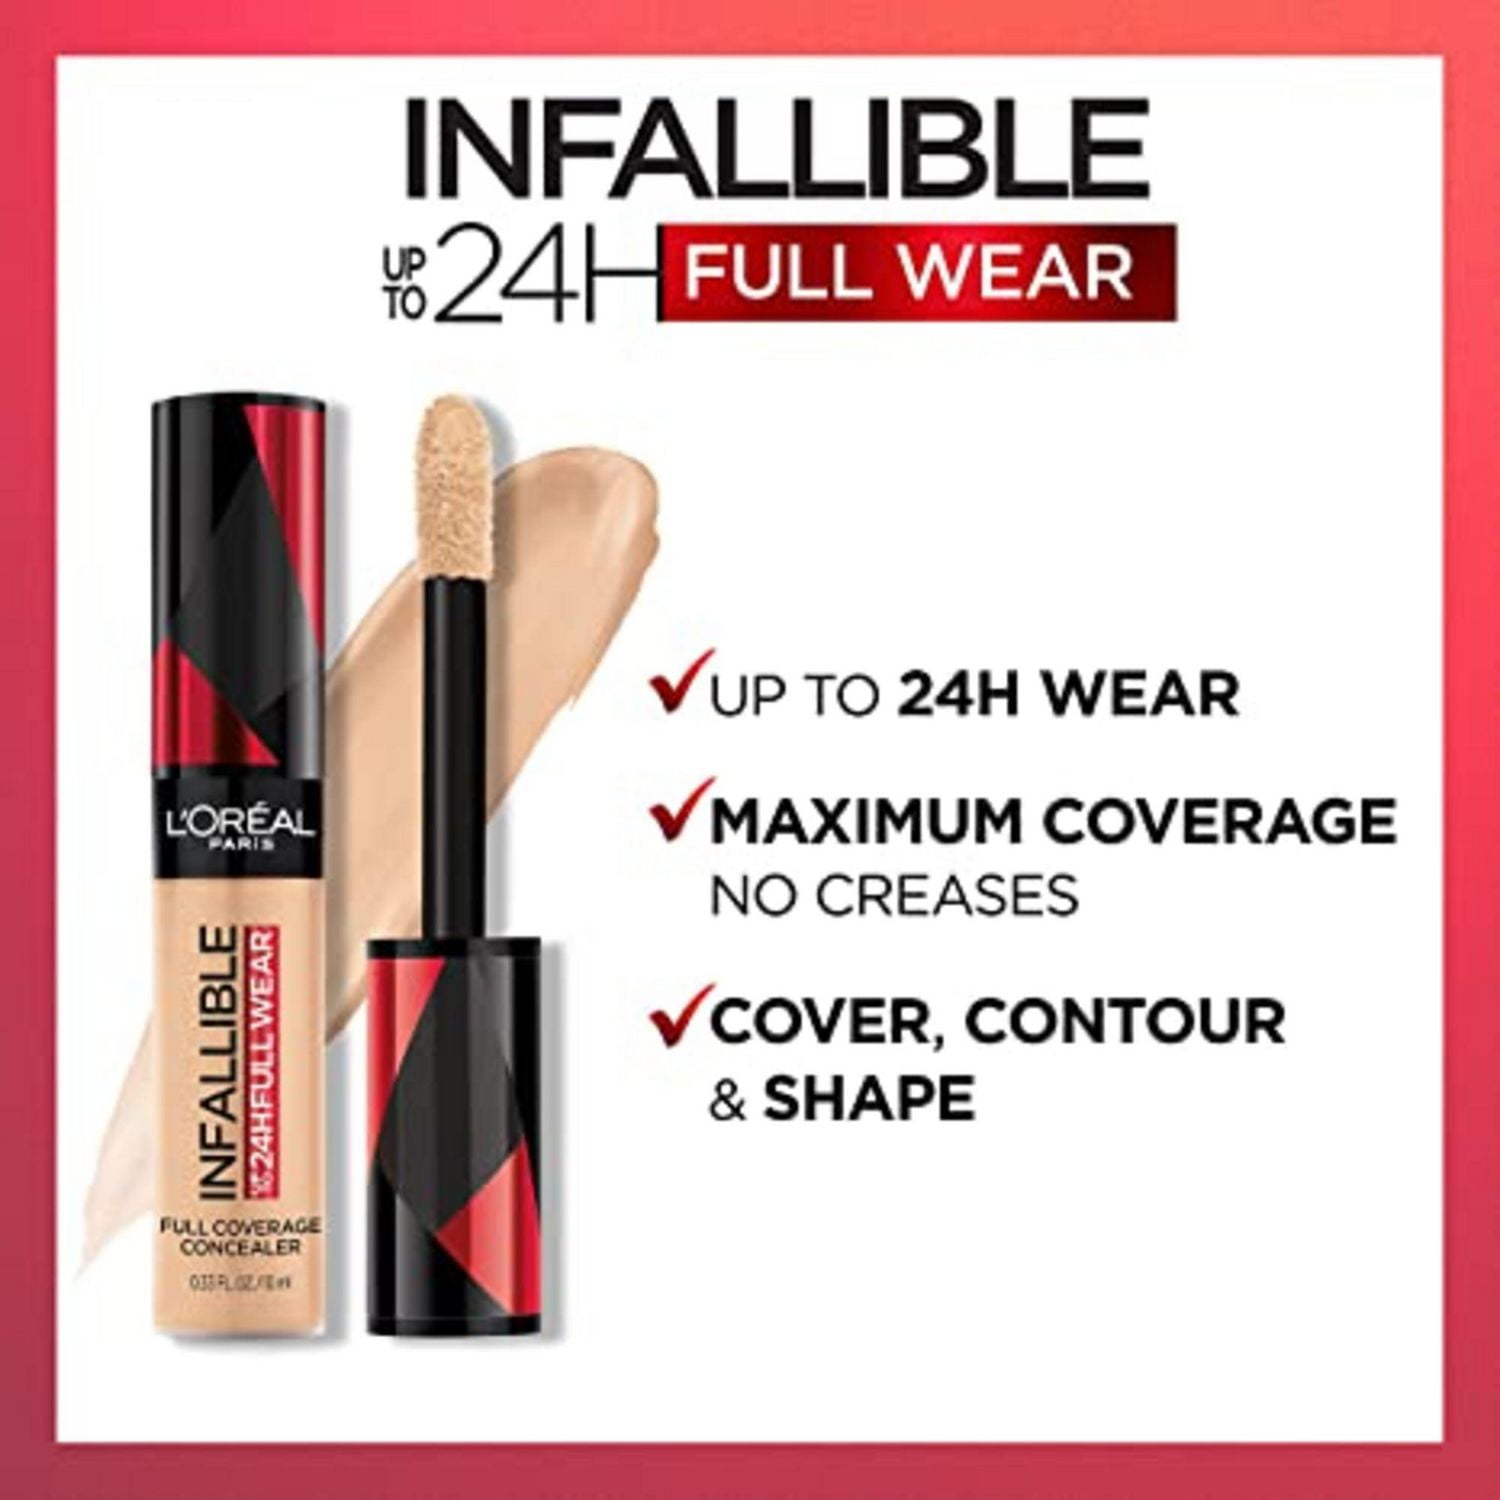 L'Oréal Paris Infallible 24H Full Wear Concealer, Full Coverage Concealer 